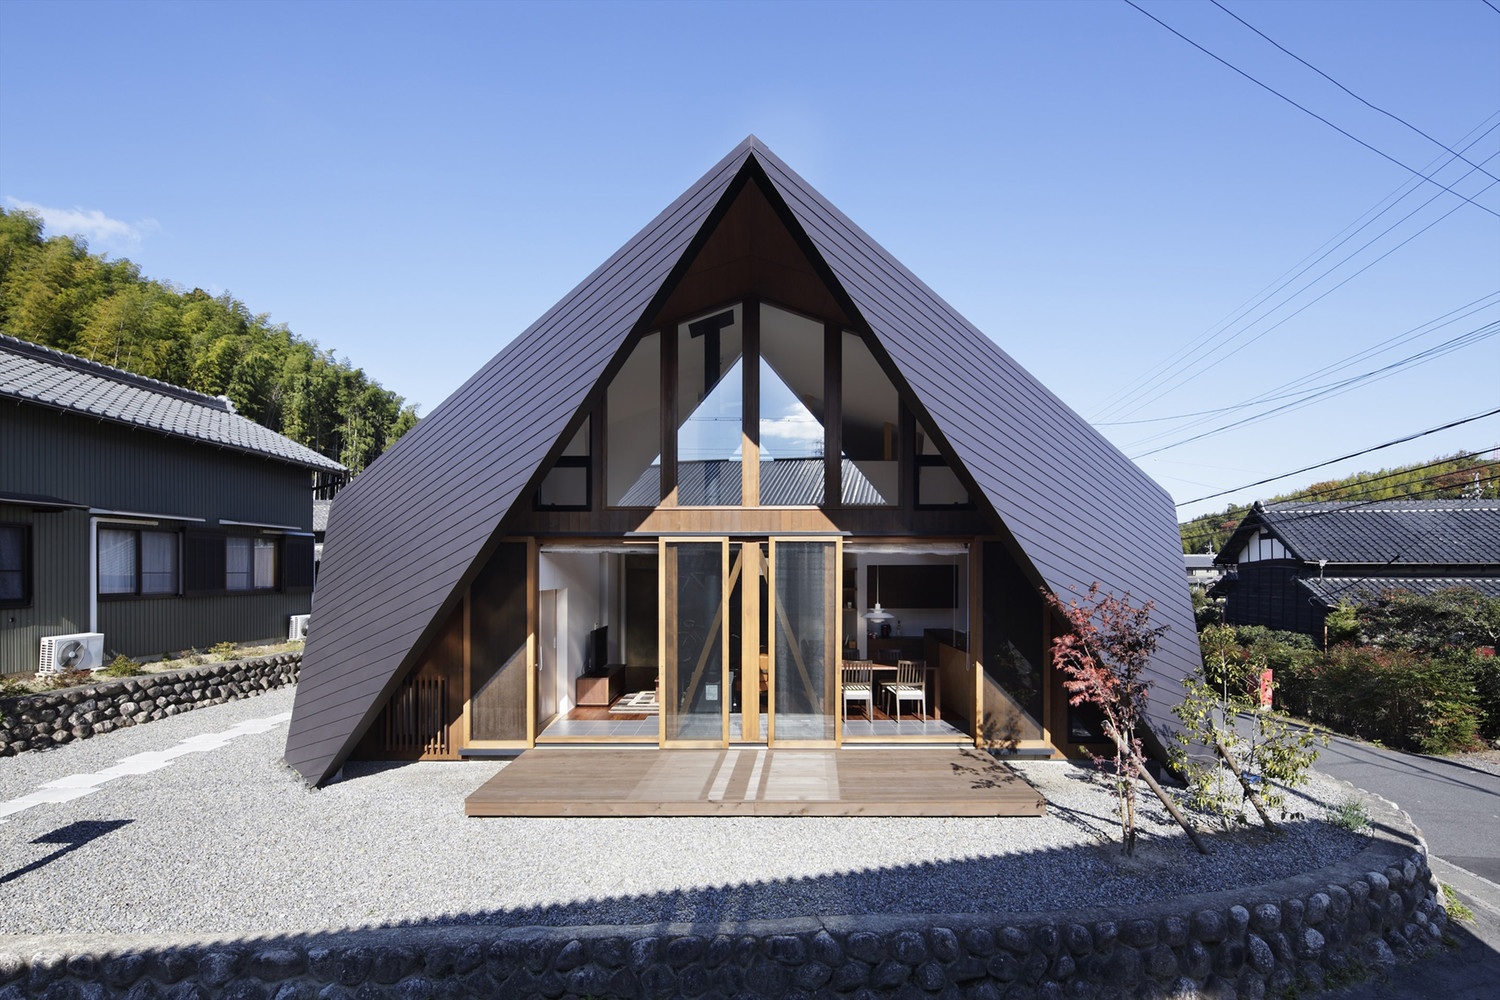 Mê mẩn ngôi nhà ở vùng quê Nhật Bản lấy cảm hứng từ “Origami” - 4